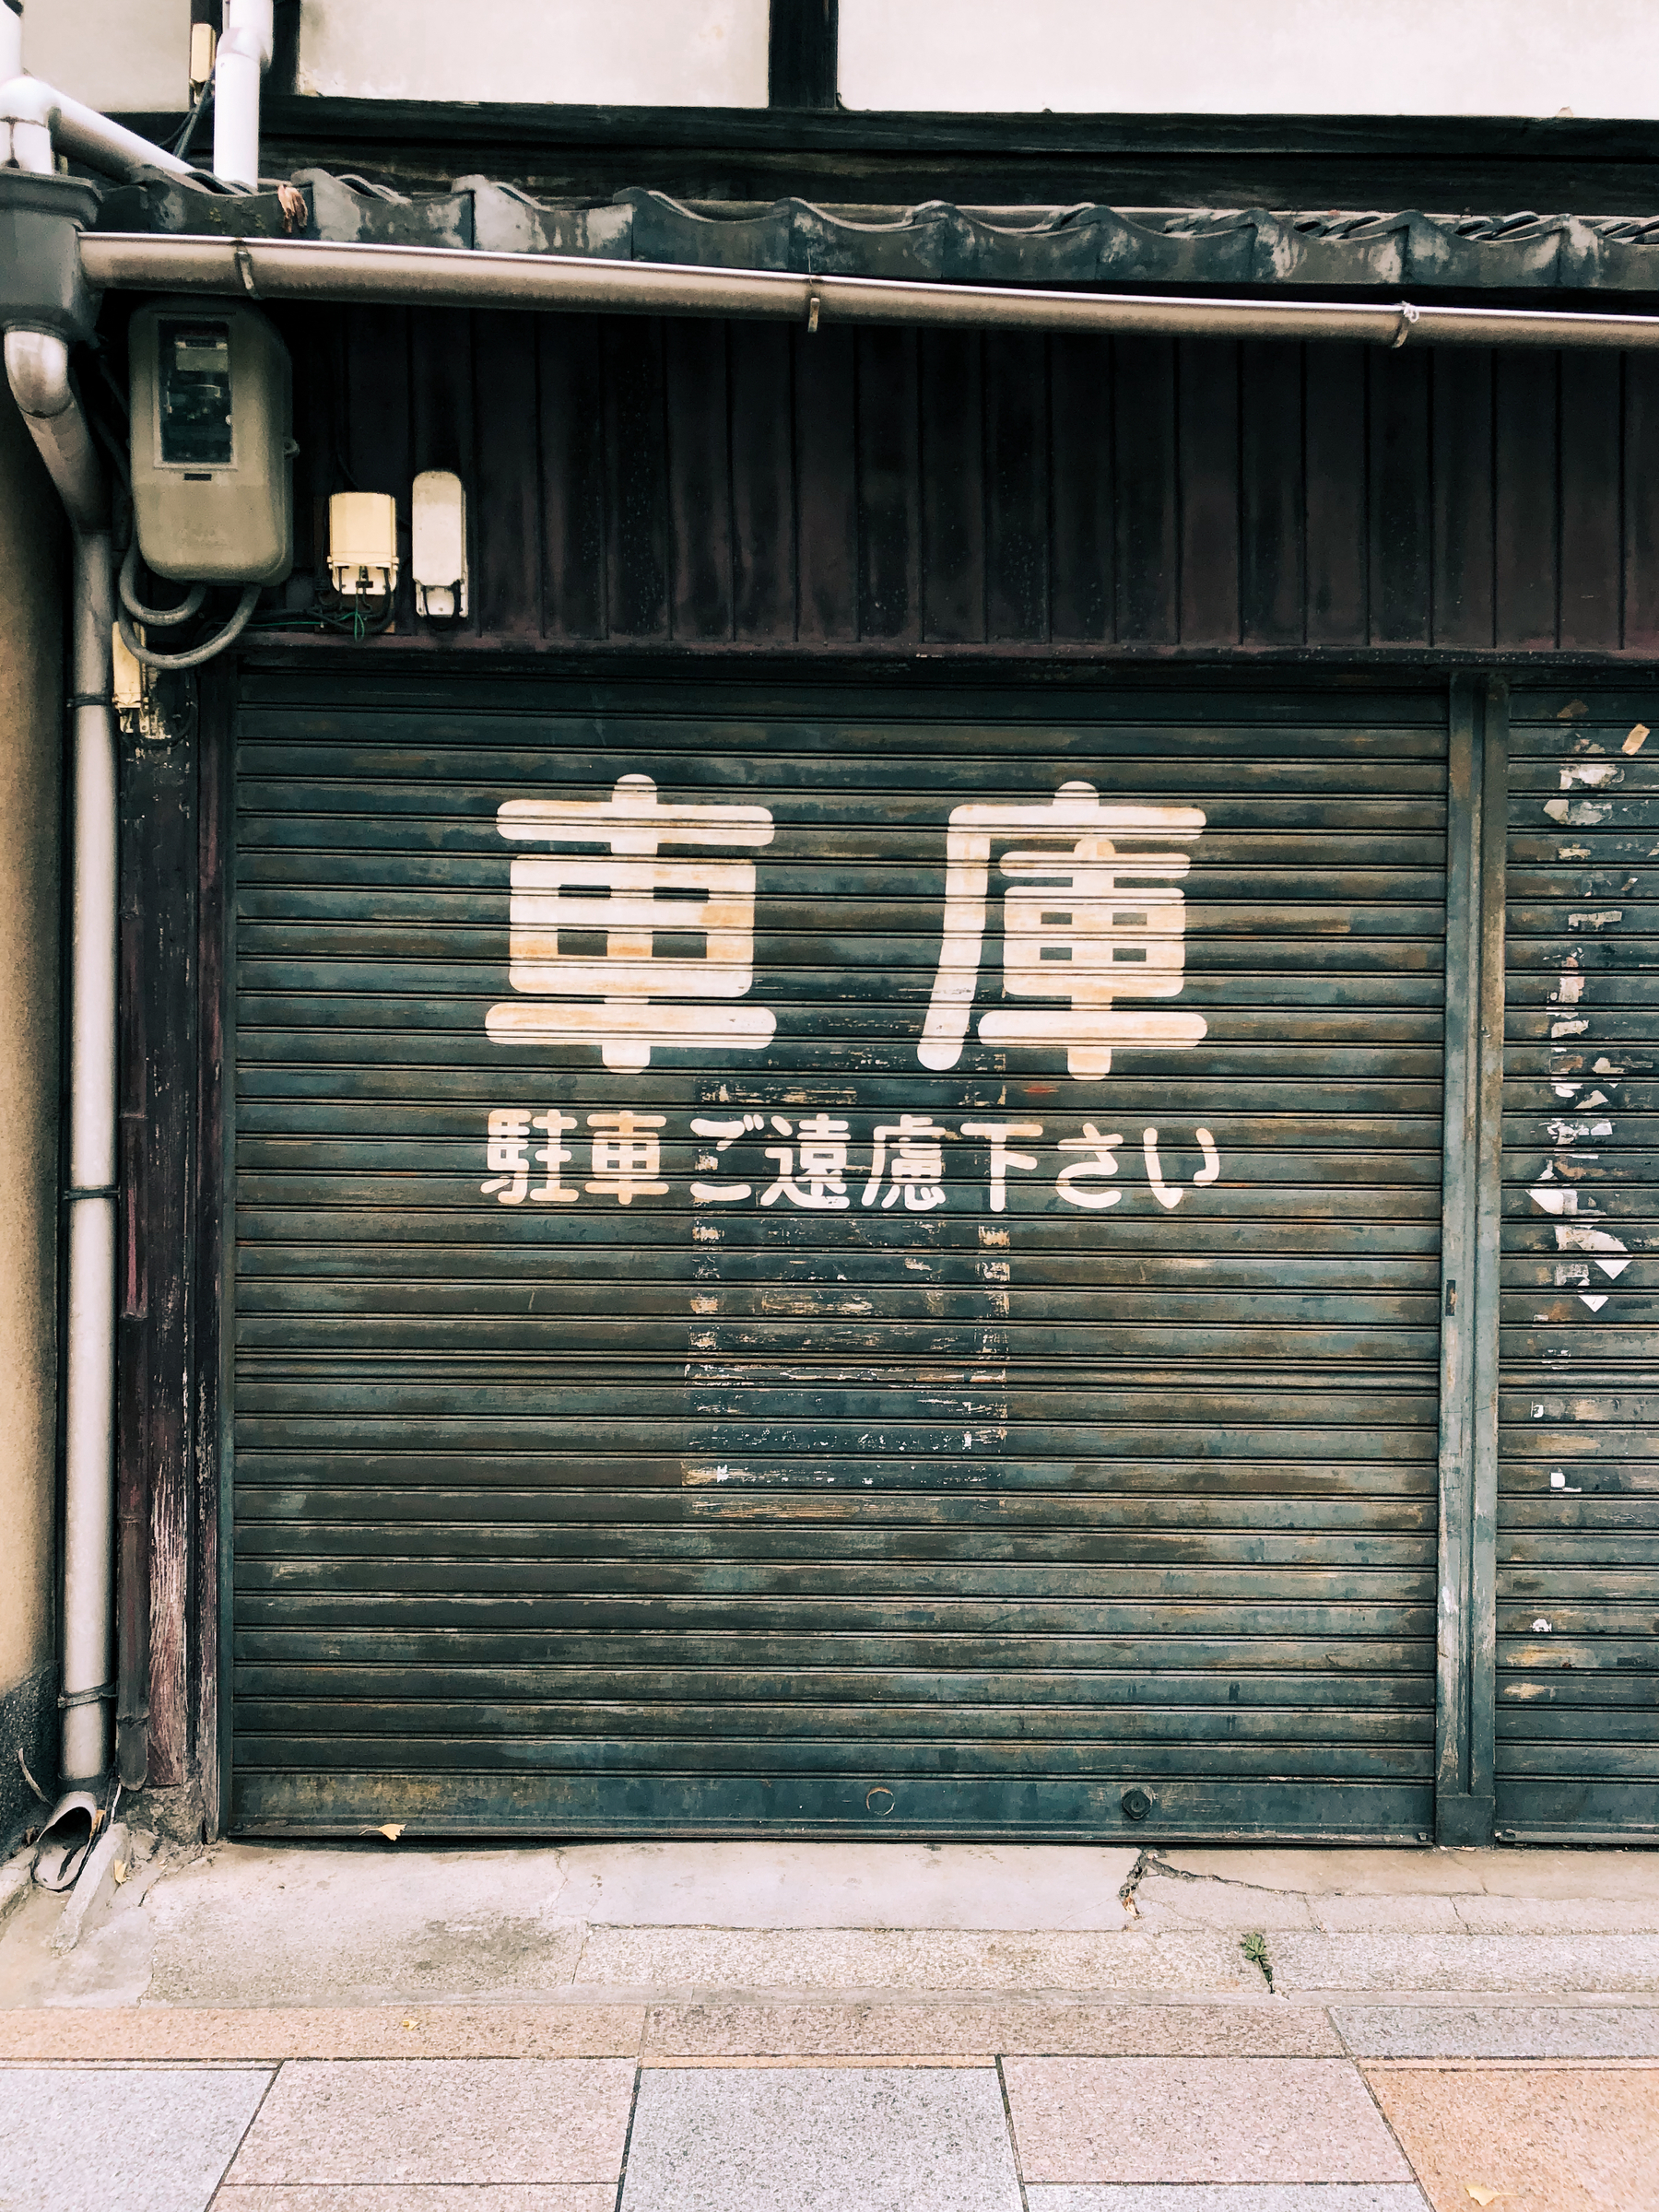 A closed shop door.